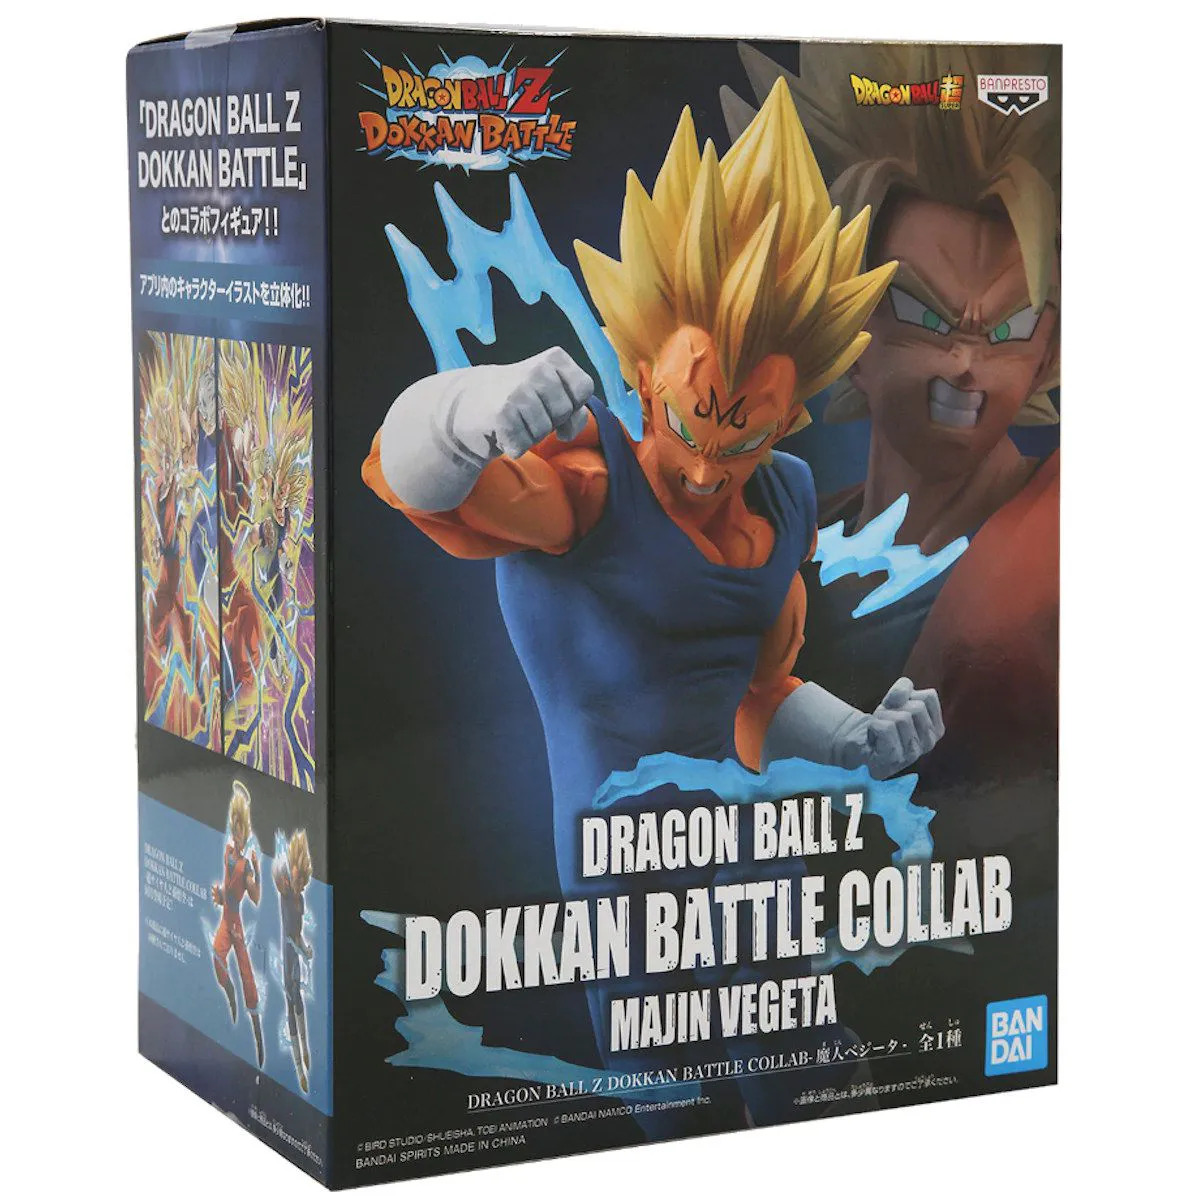 Dragon Ball Z - Super Saiyan 2 Son Goku - Dokkan Battle Collab